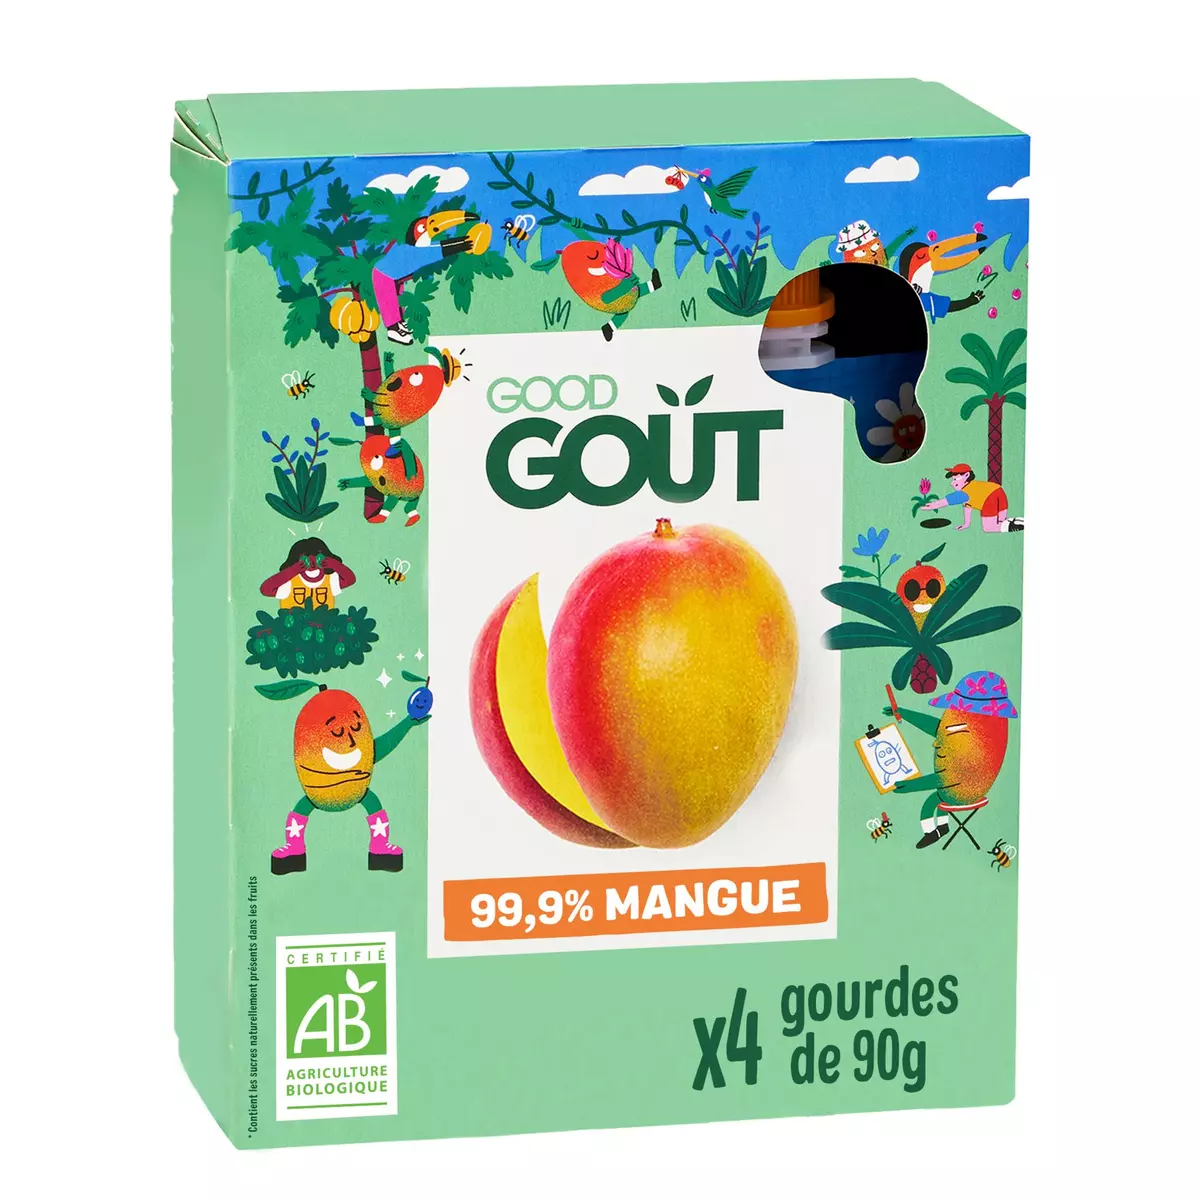 GOOD GOUT KIDZ Gourdes dessert bio mangue sans sucres ajoutés 4x90g